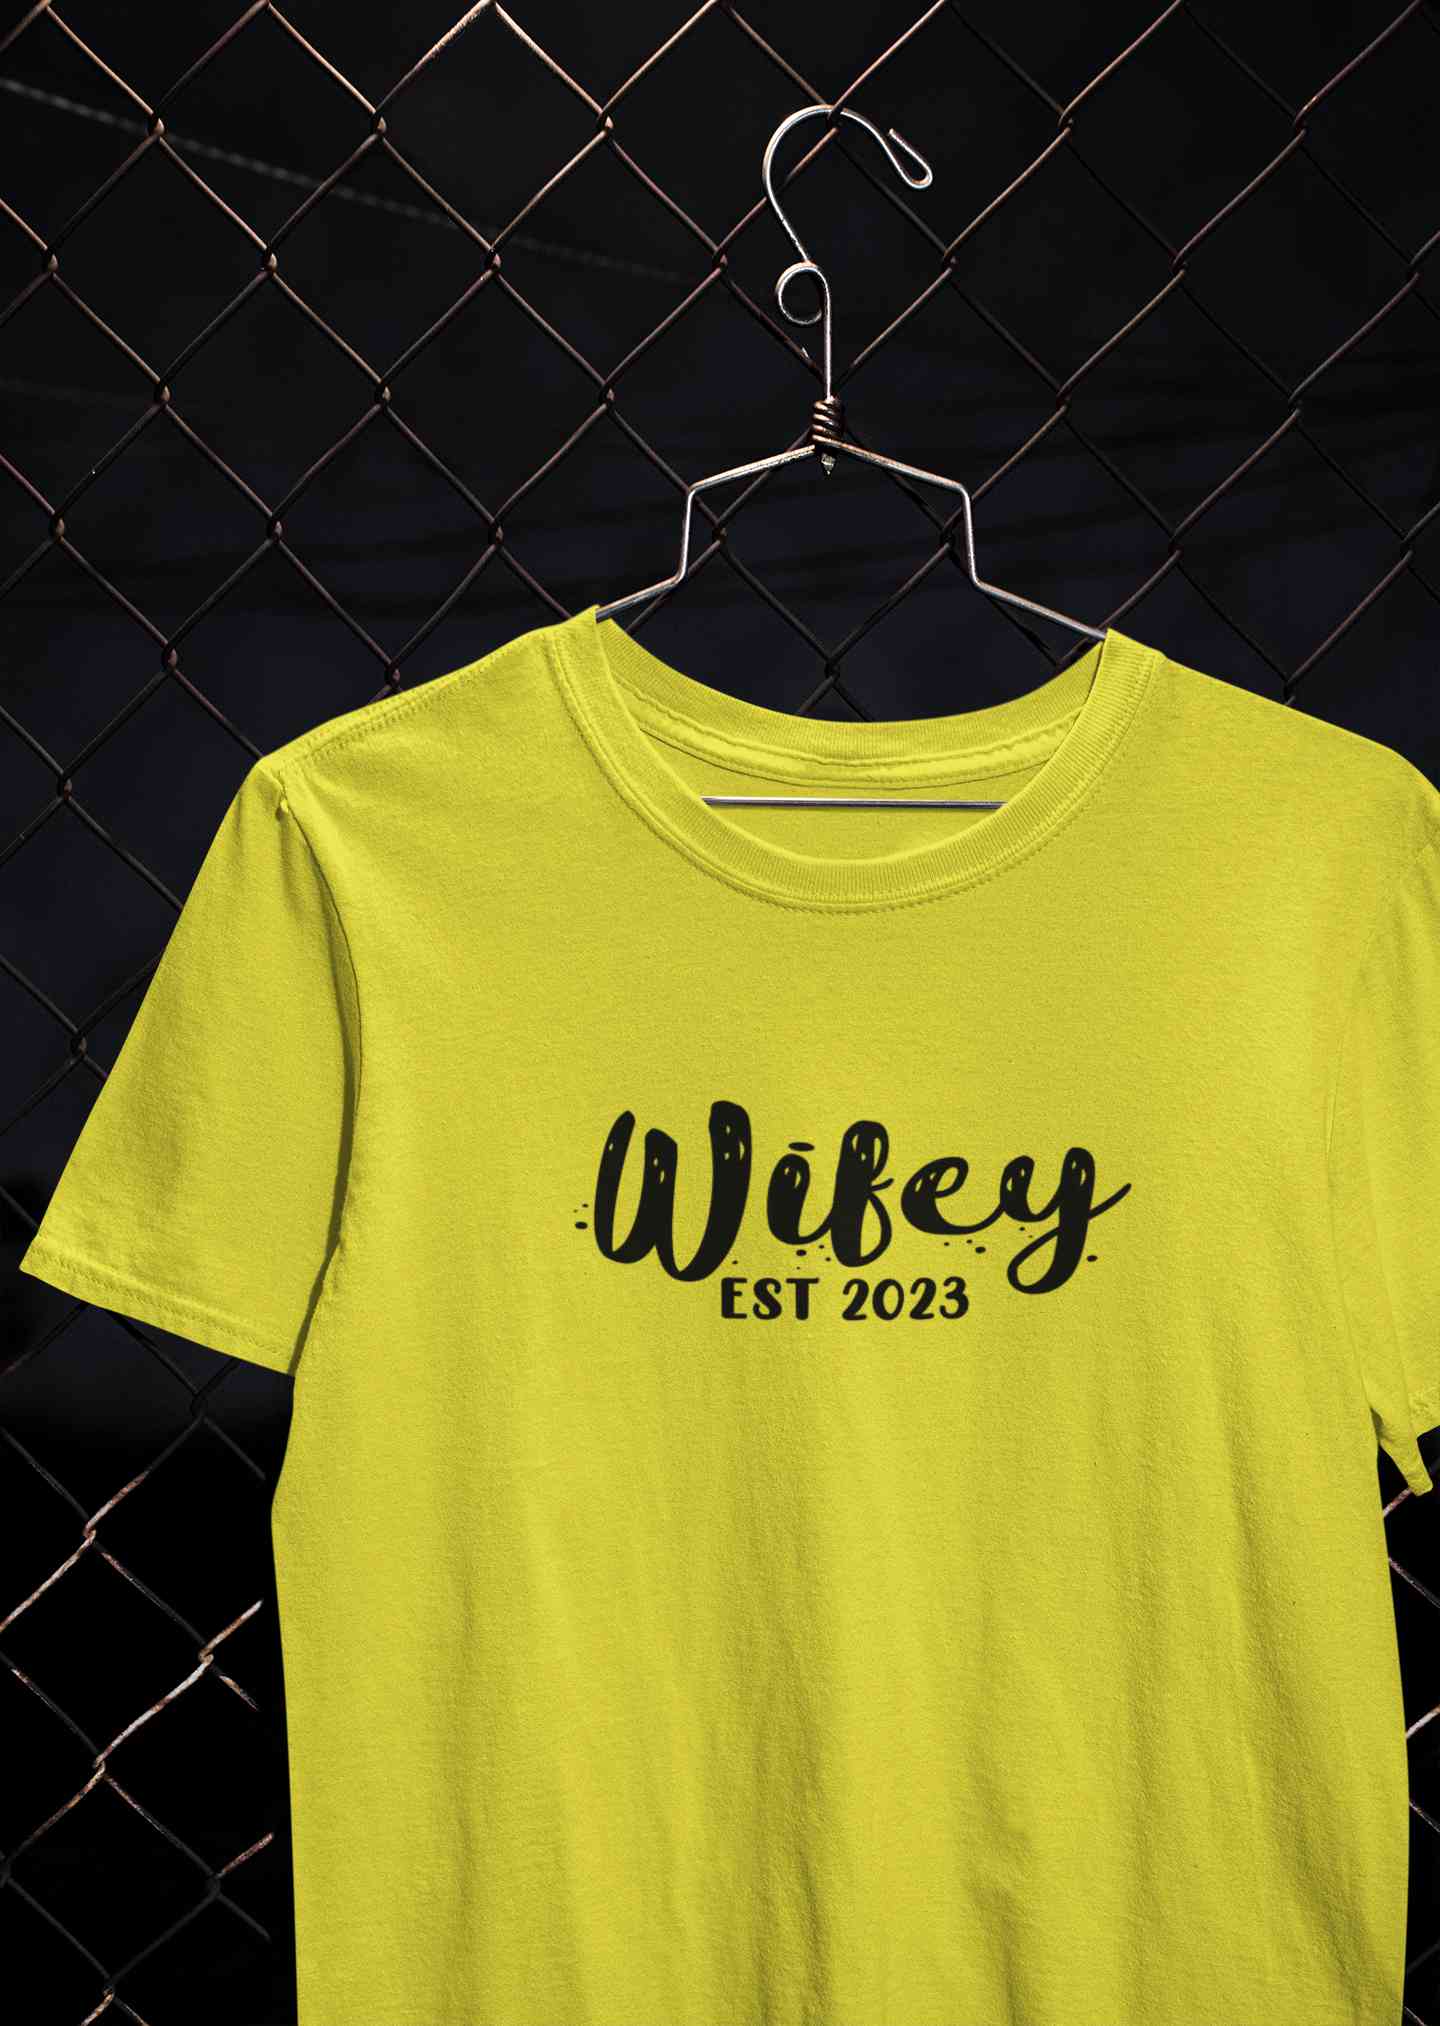 Hubby Wifey Est 2023 Couple Half Sleeves T-Shirts -FunkyTeesClub